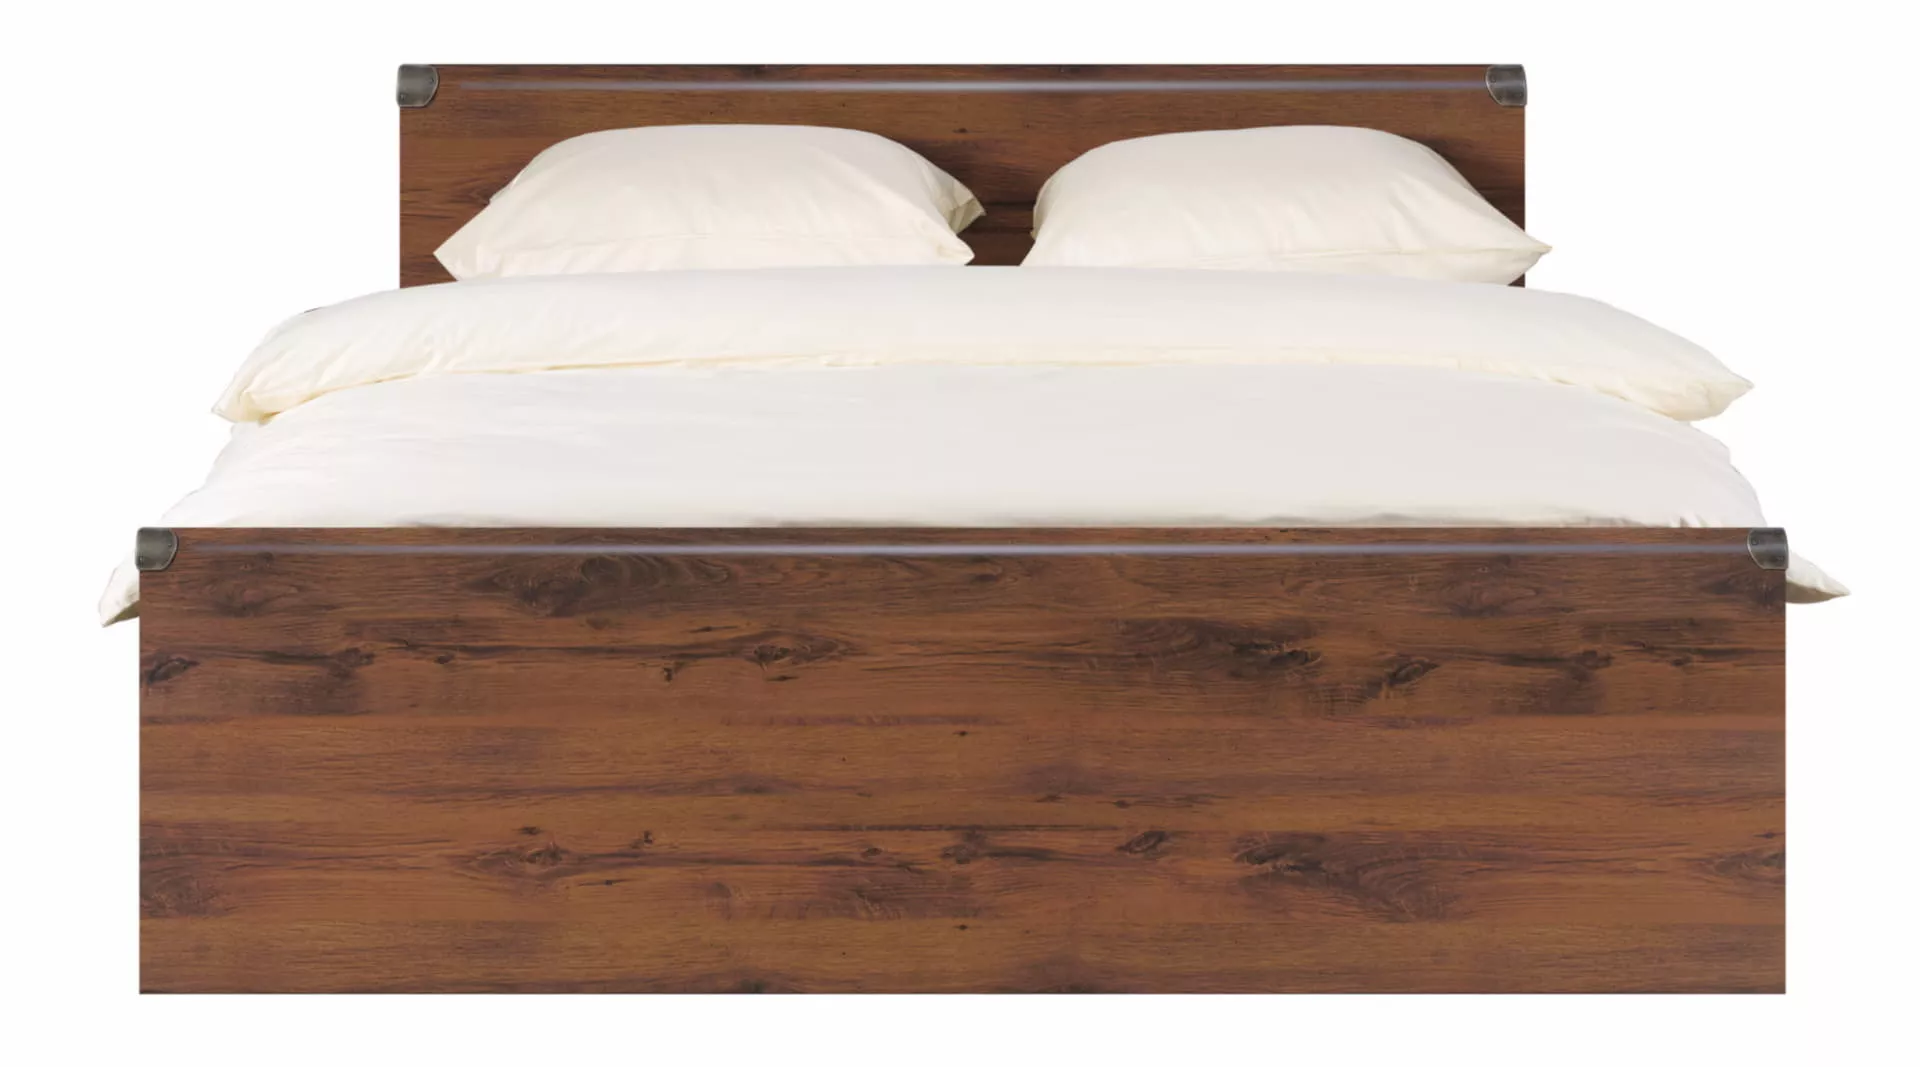 Спальня | Кровати | ИНДИАНА Кровать JLOZ 160*200 Мебель ☆ IDEA в Севастополе| BRW, Брест anons